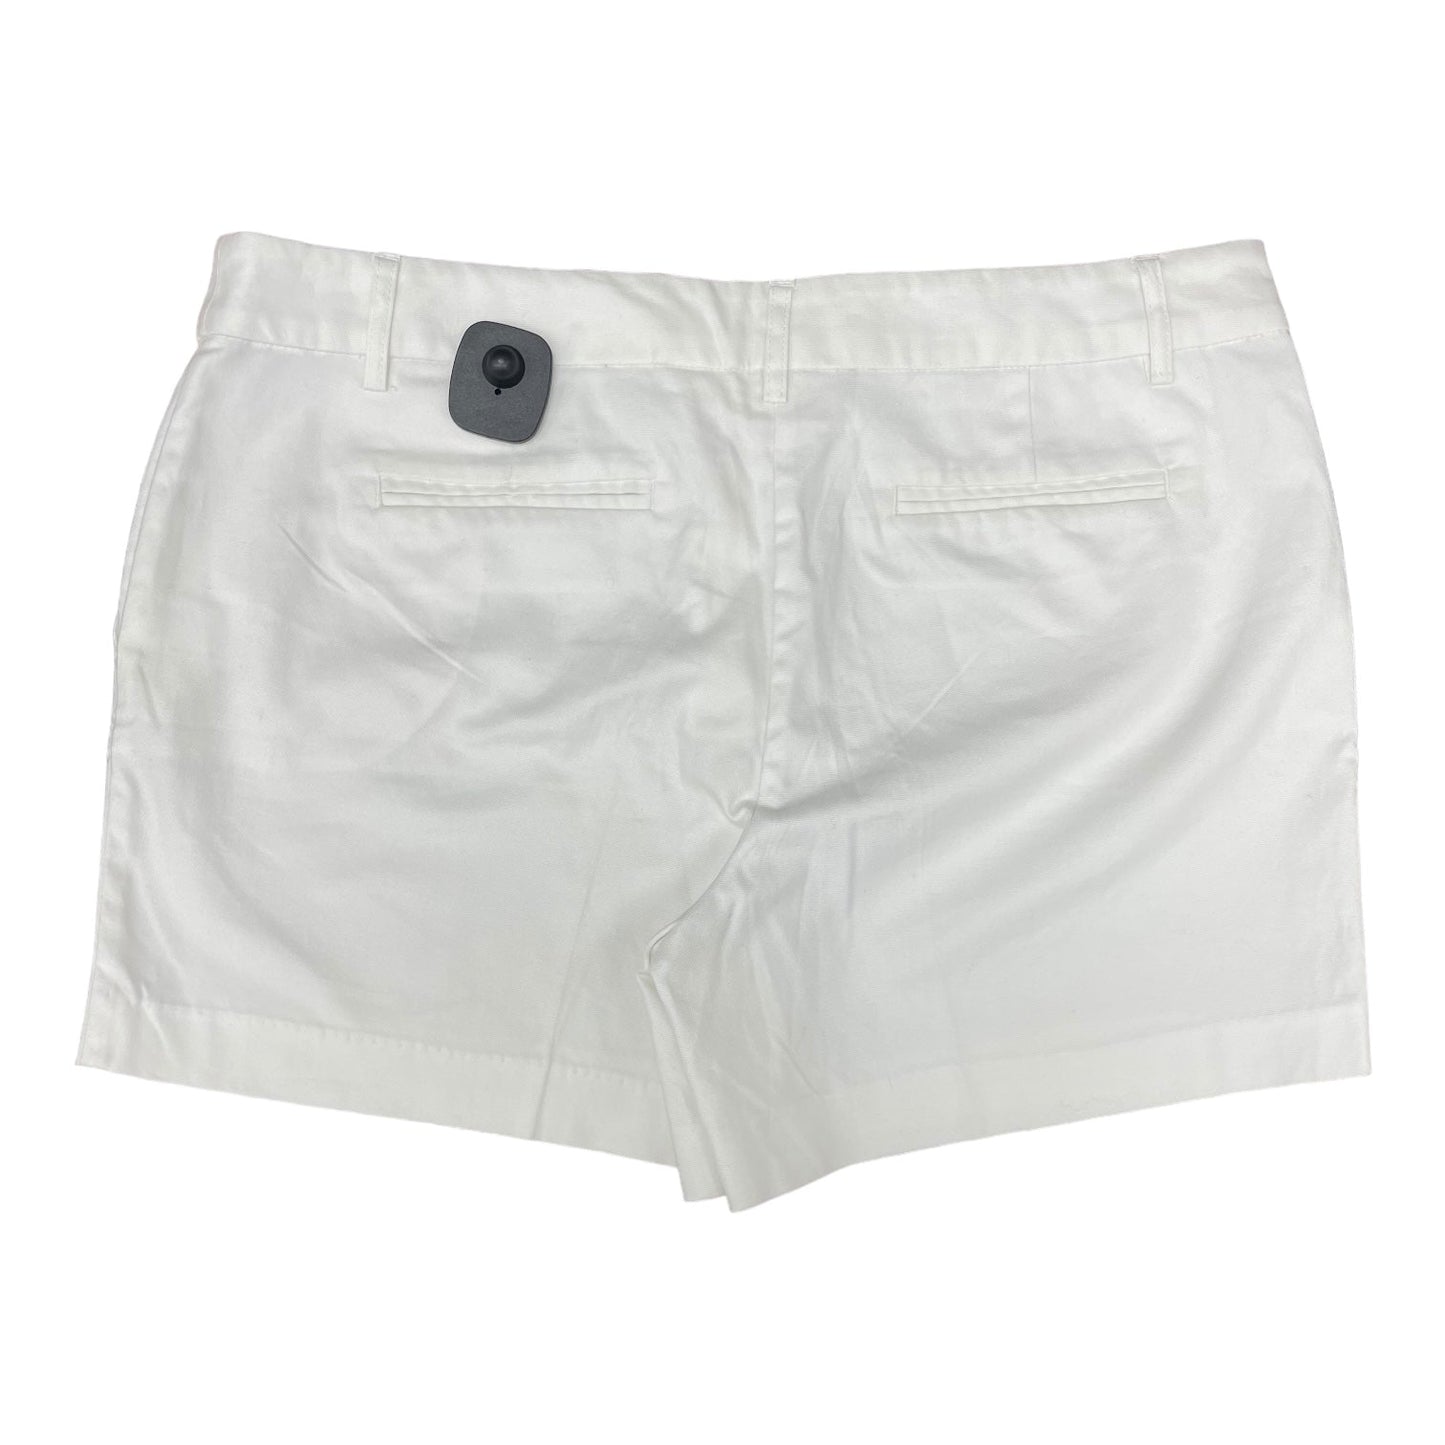 White Shorts Kenar, Size 12